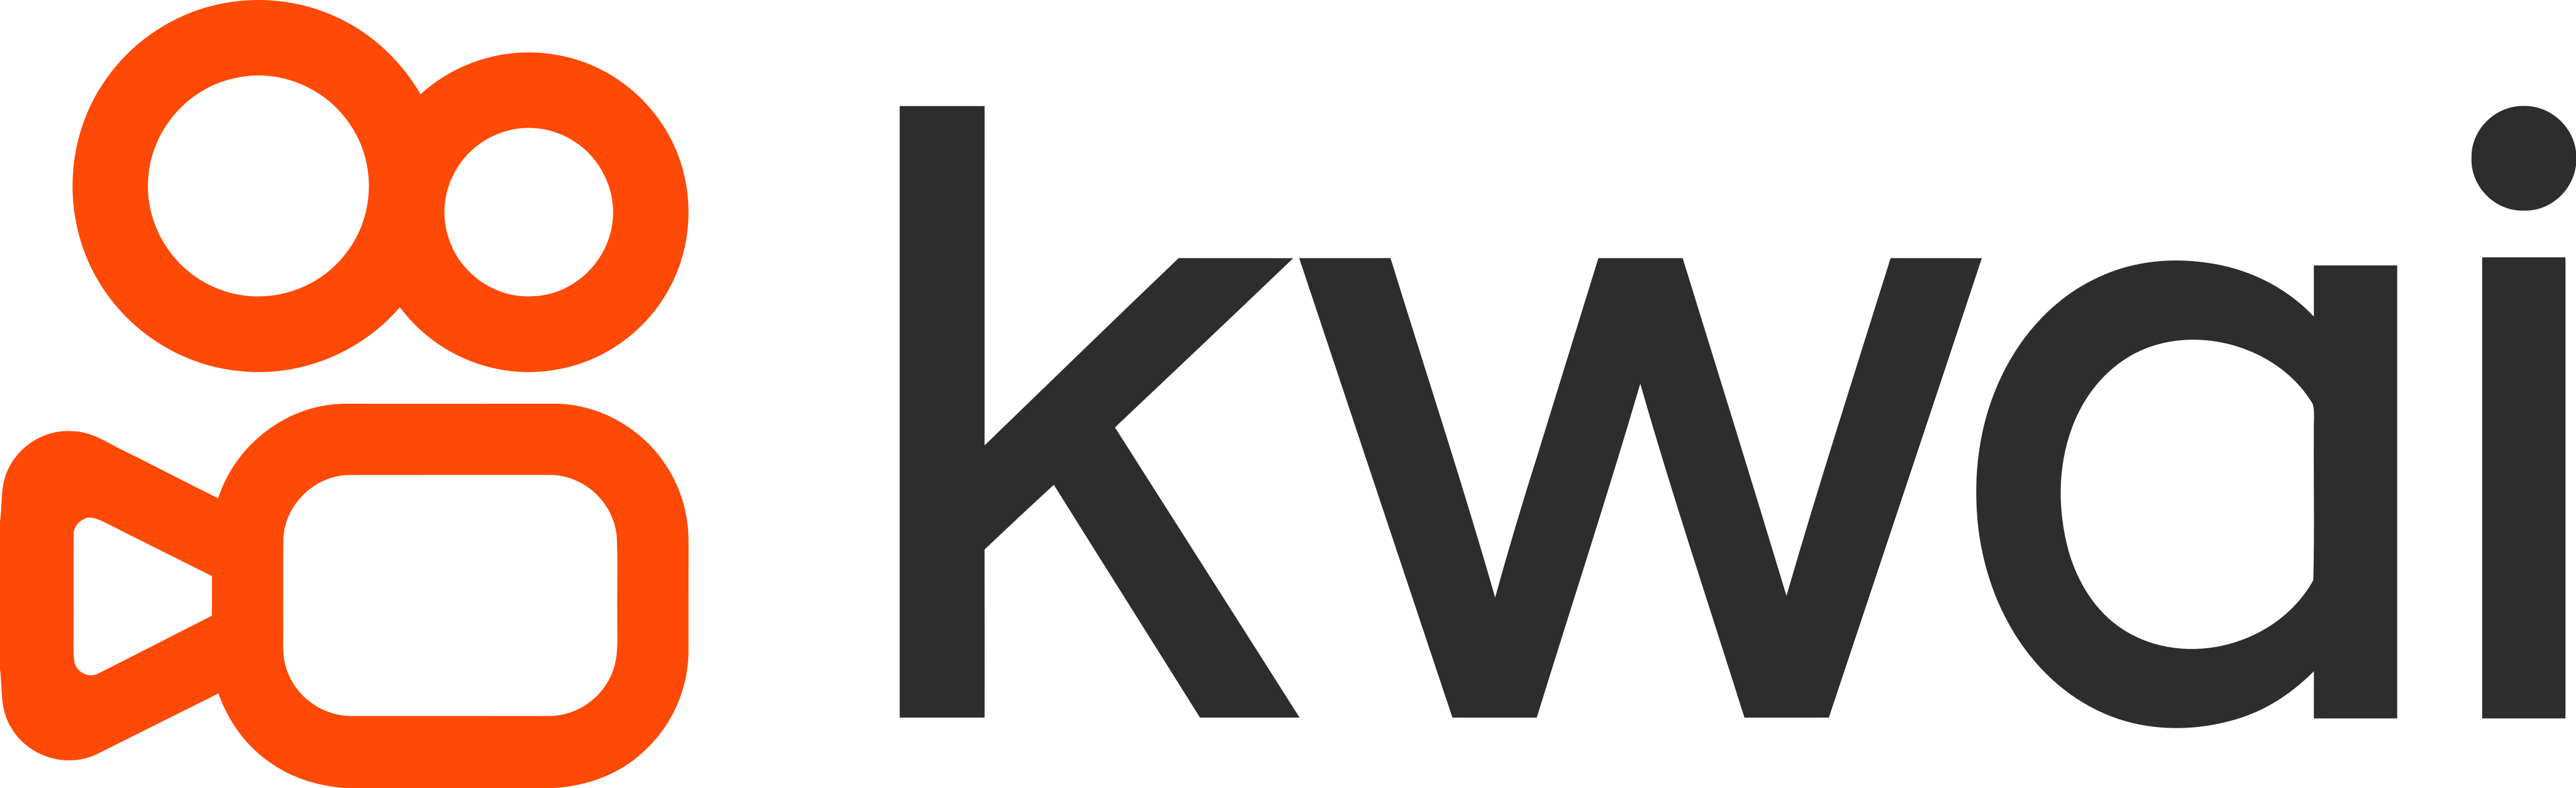 kwai logo 1 - Kwai Logo